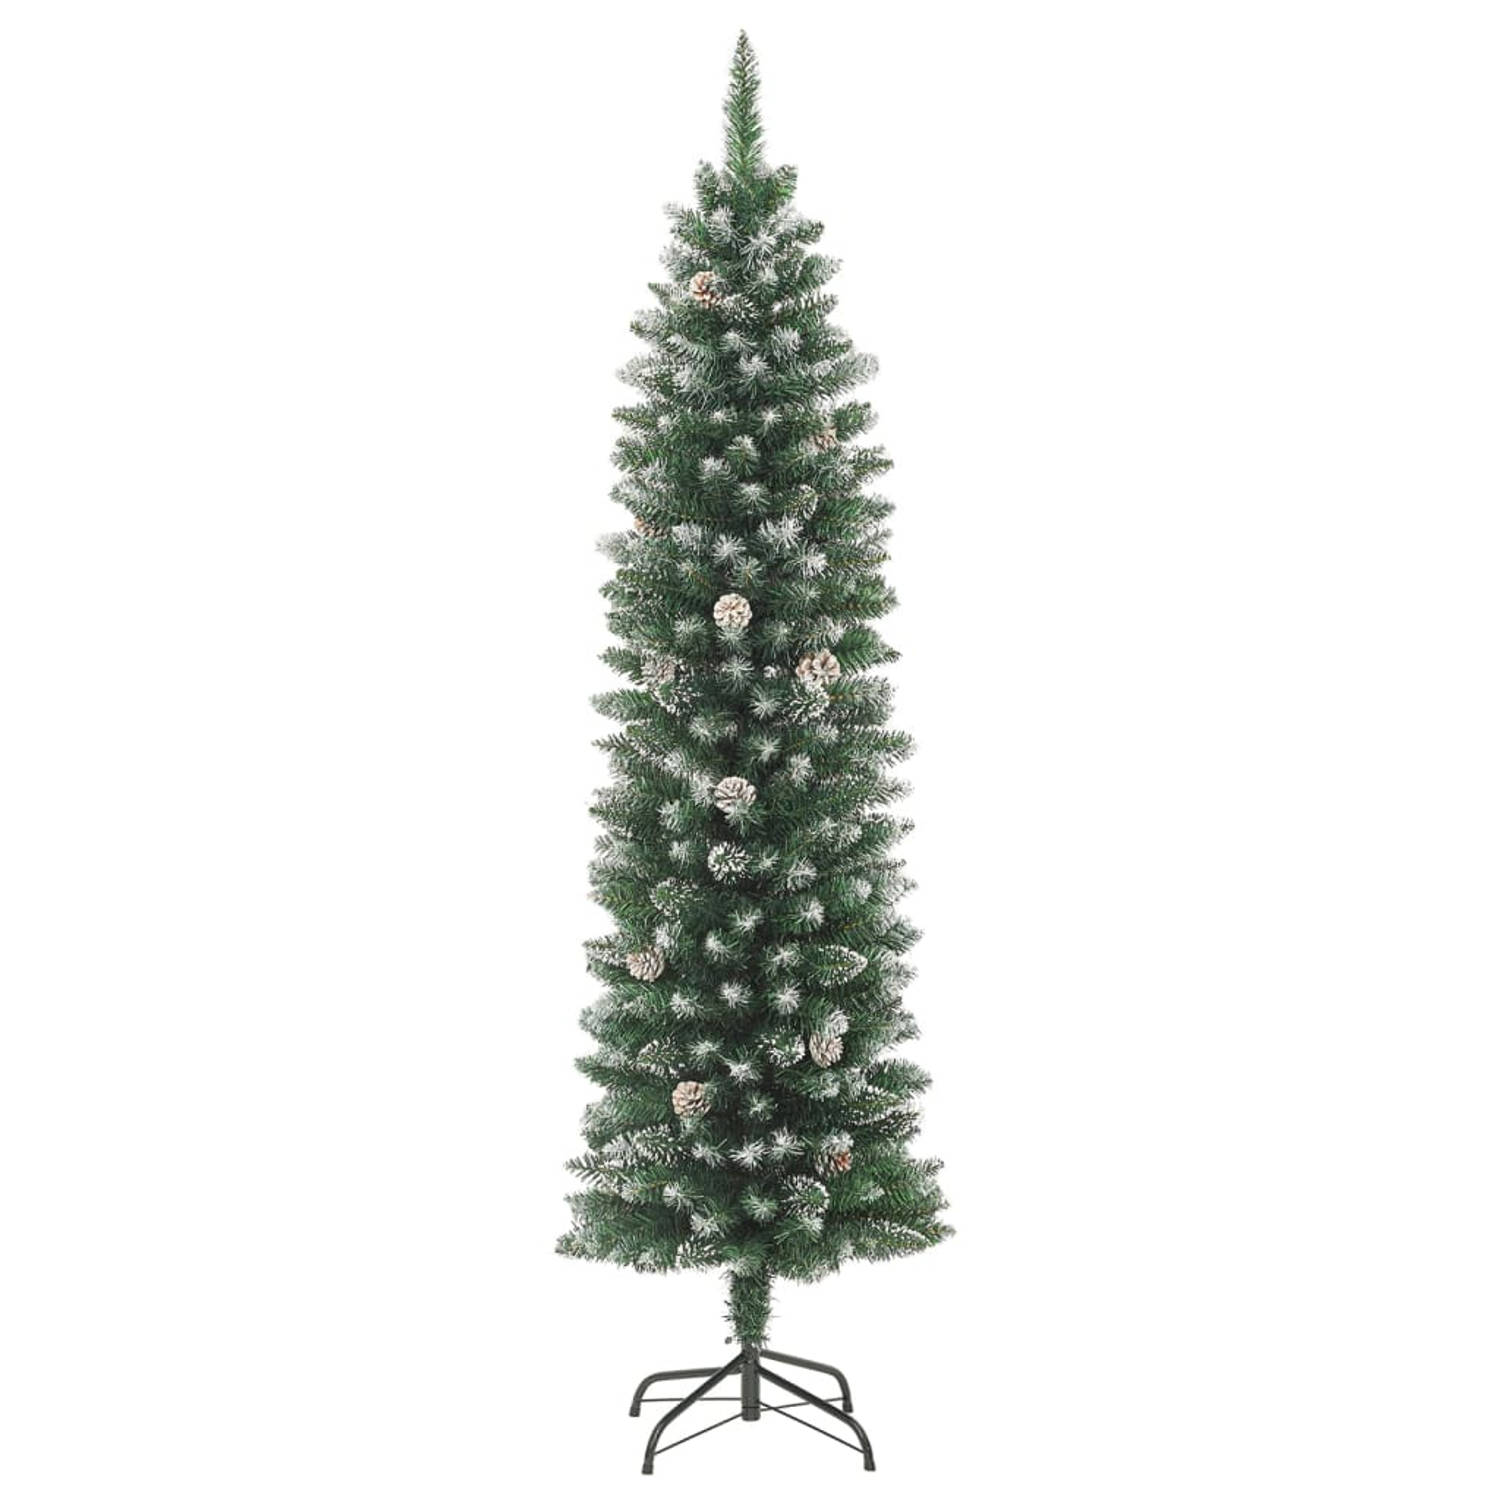 The Living Store Kerstboom Smal Groen/Wit 240cm - PVC/Staal - 550 uiteinden - Met dennenappels - Witte decoratiesneeuw